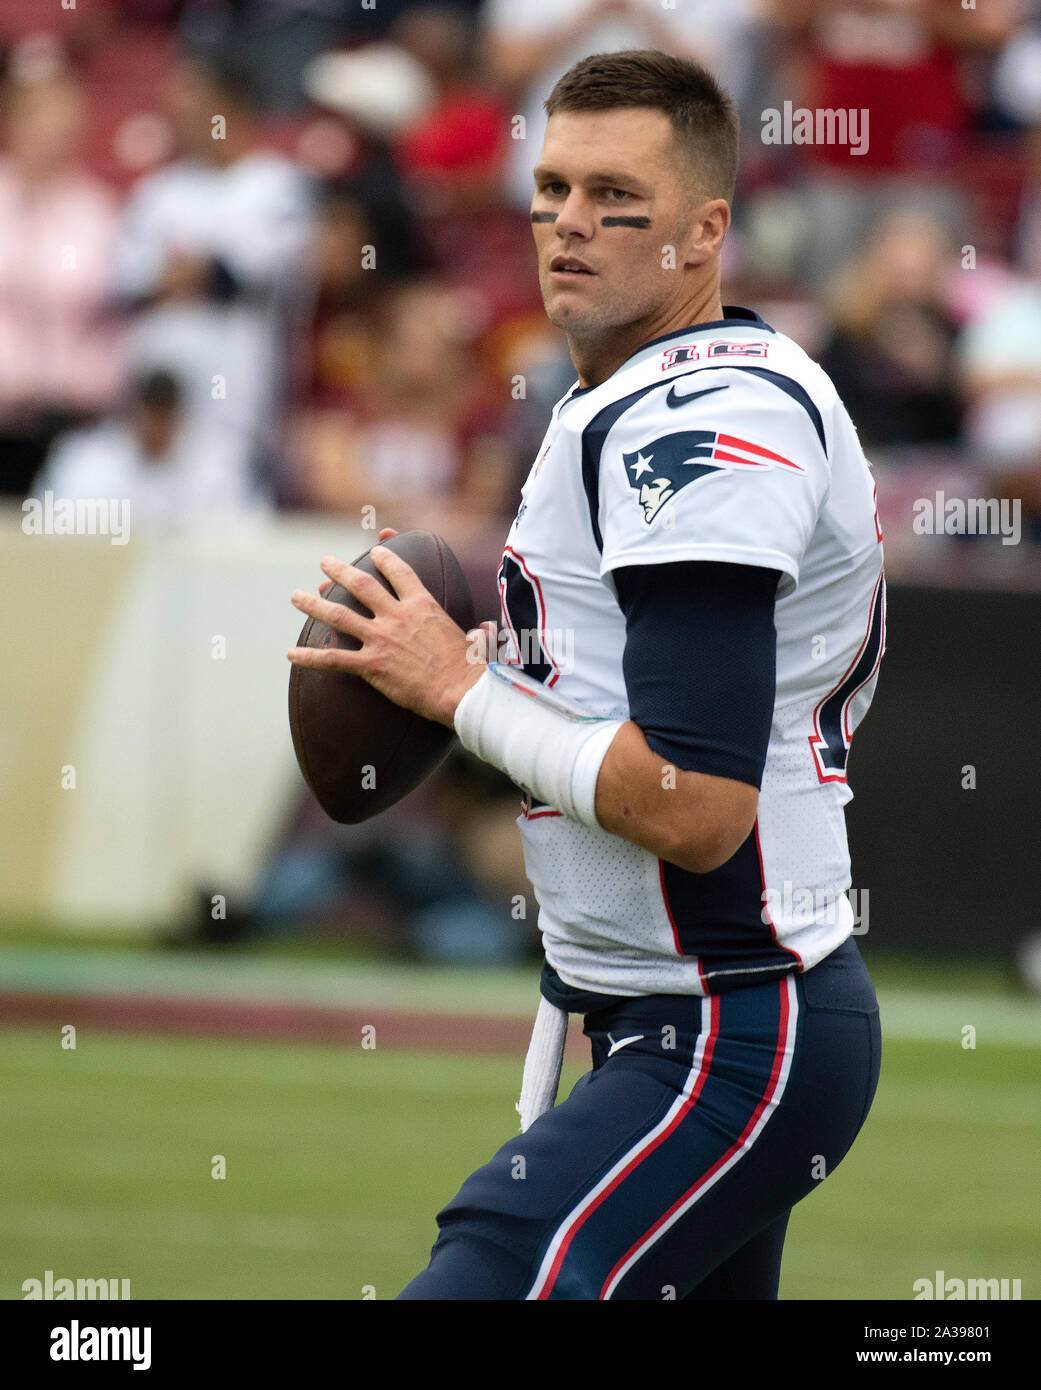 New England Patriots Quarterback Tom Brady (12) warm-up vor dem Spiel gegen die Washington Redskins an FedEx Field in Landover, Maryland am Sonntag, 6. Oktober 2019. Quelle: Ron Sachs/CNP | Verwendung weltweit Stockfoto